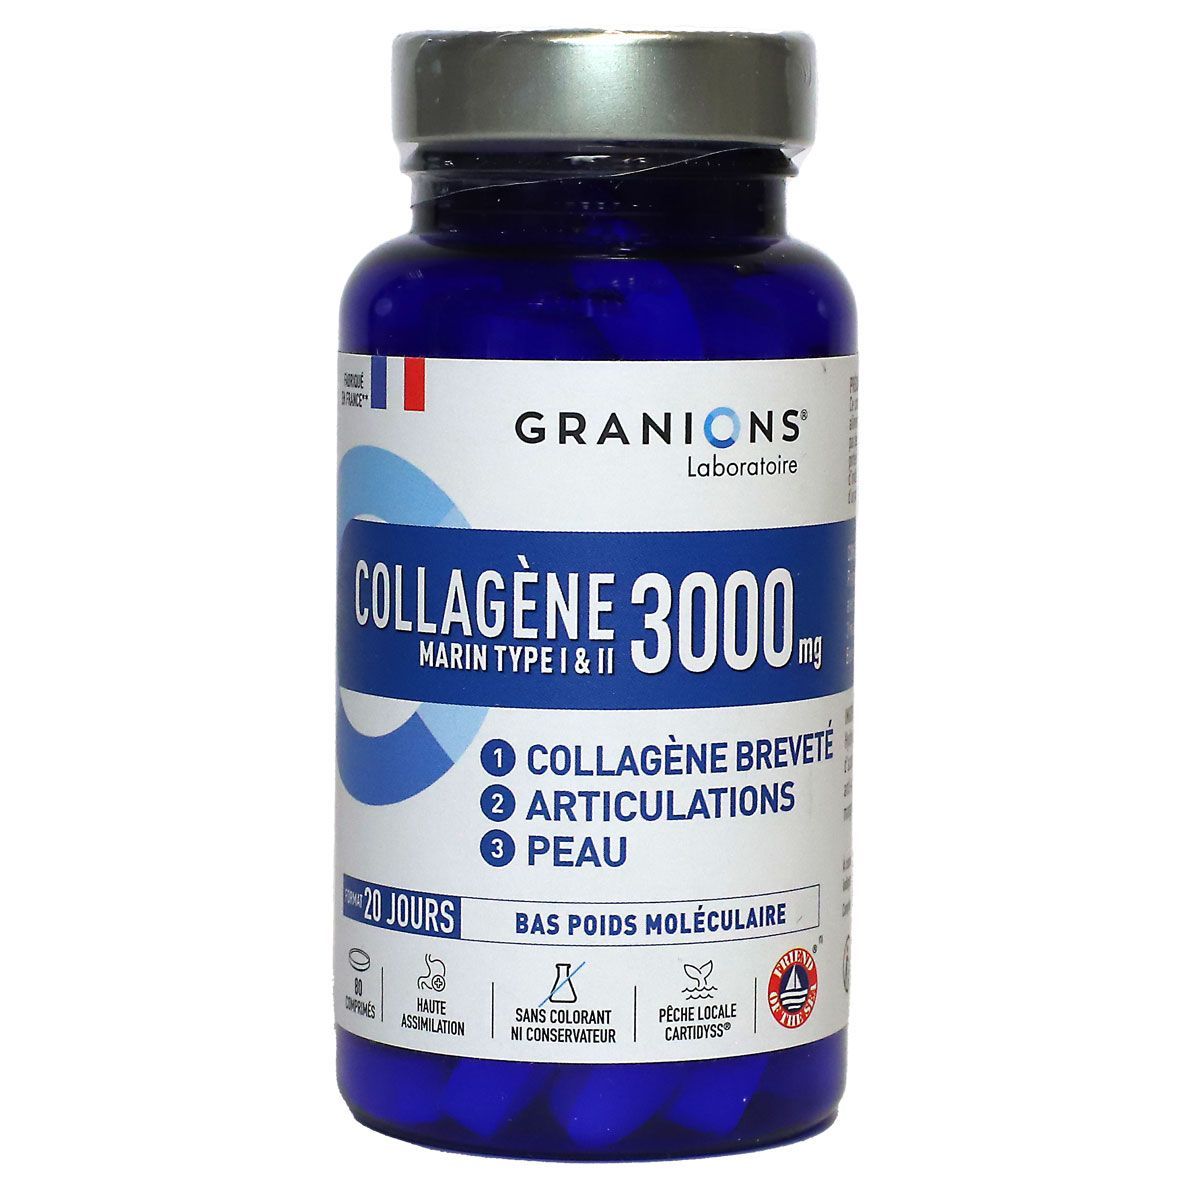 Collagène Type I et II 3000 mg est un complément alimentaire du